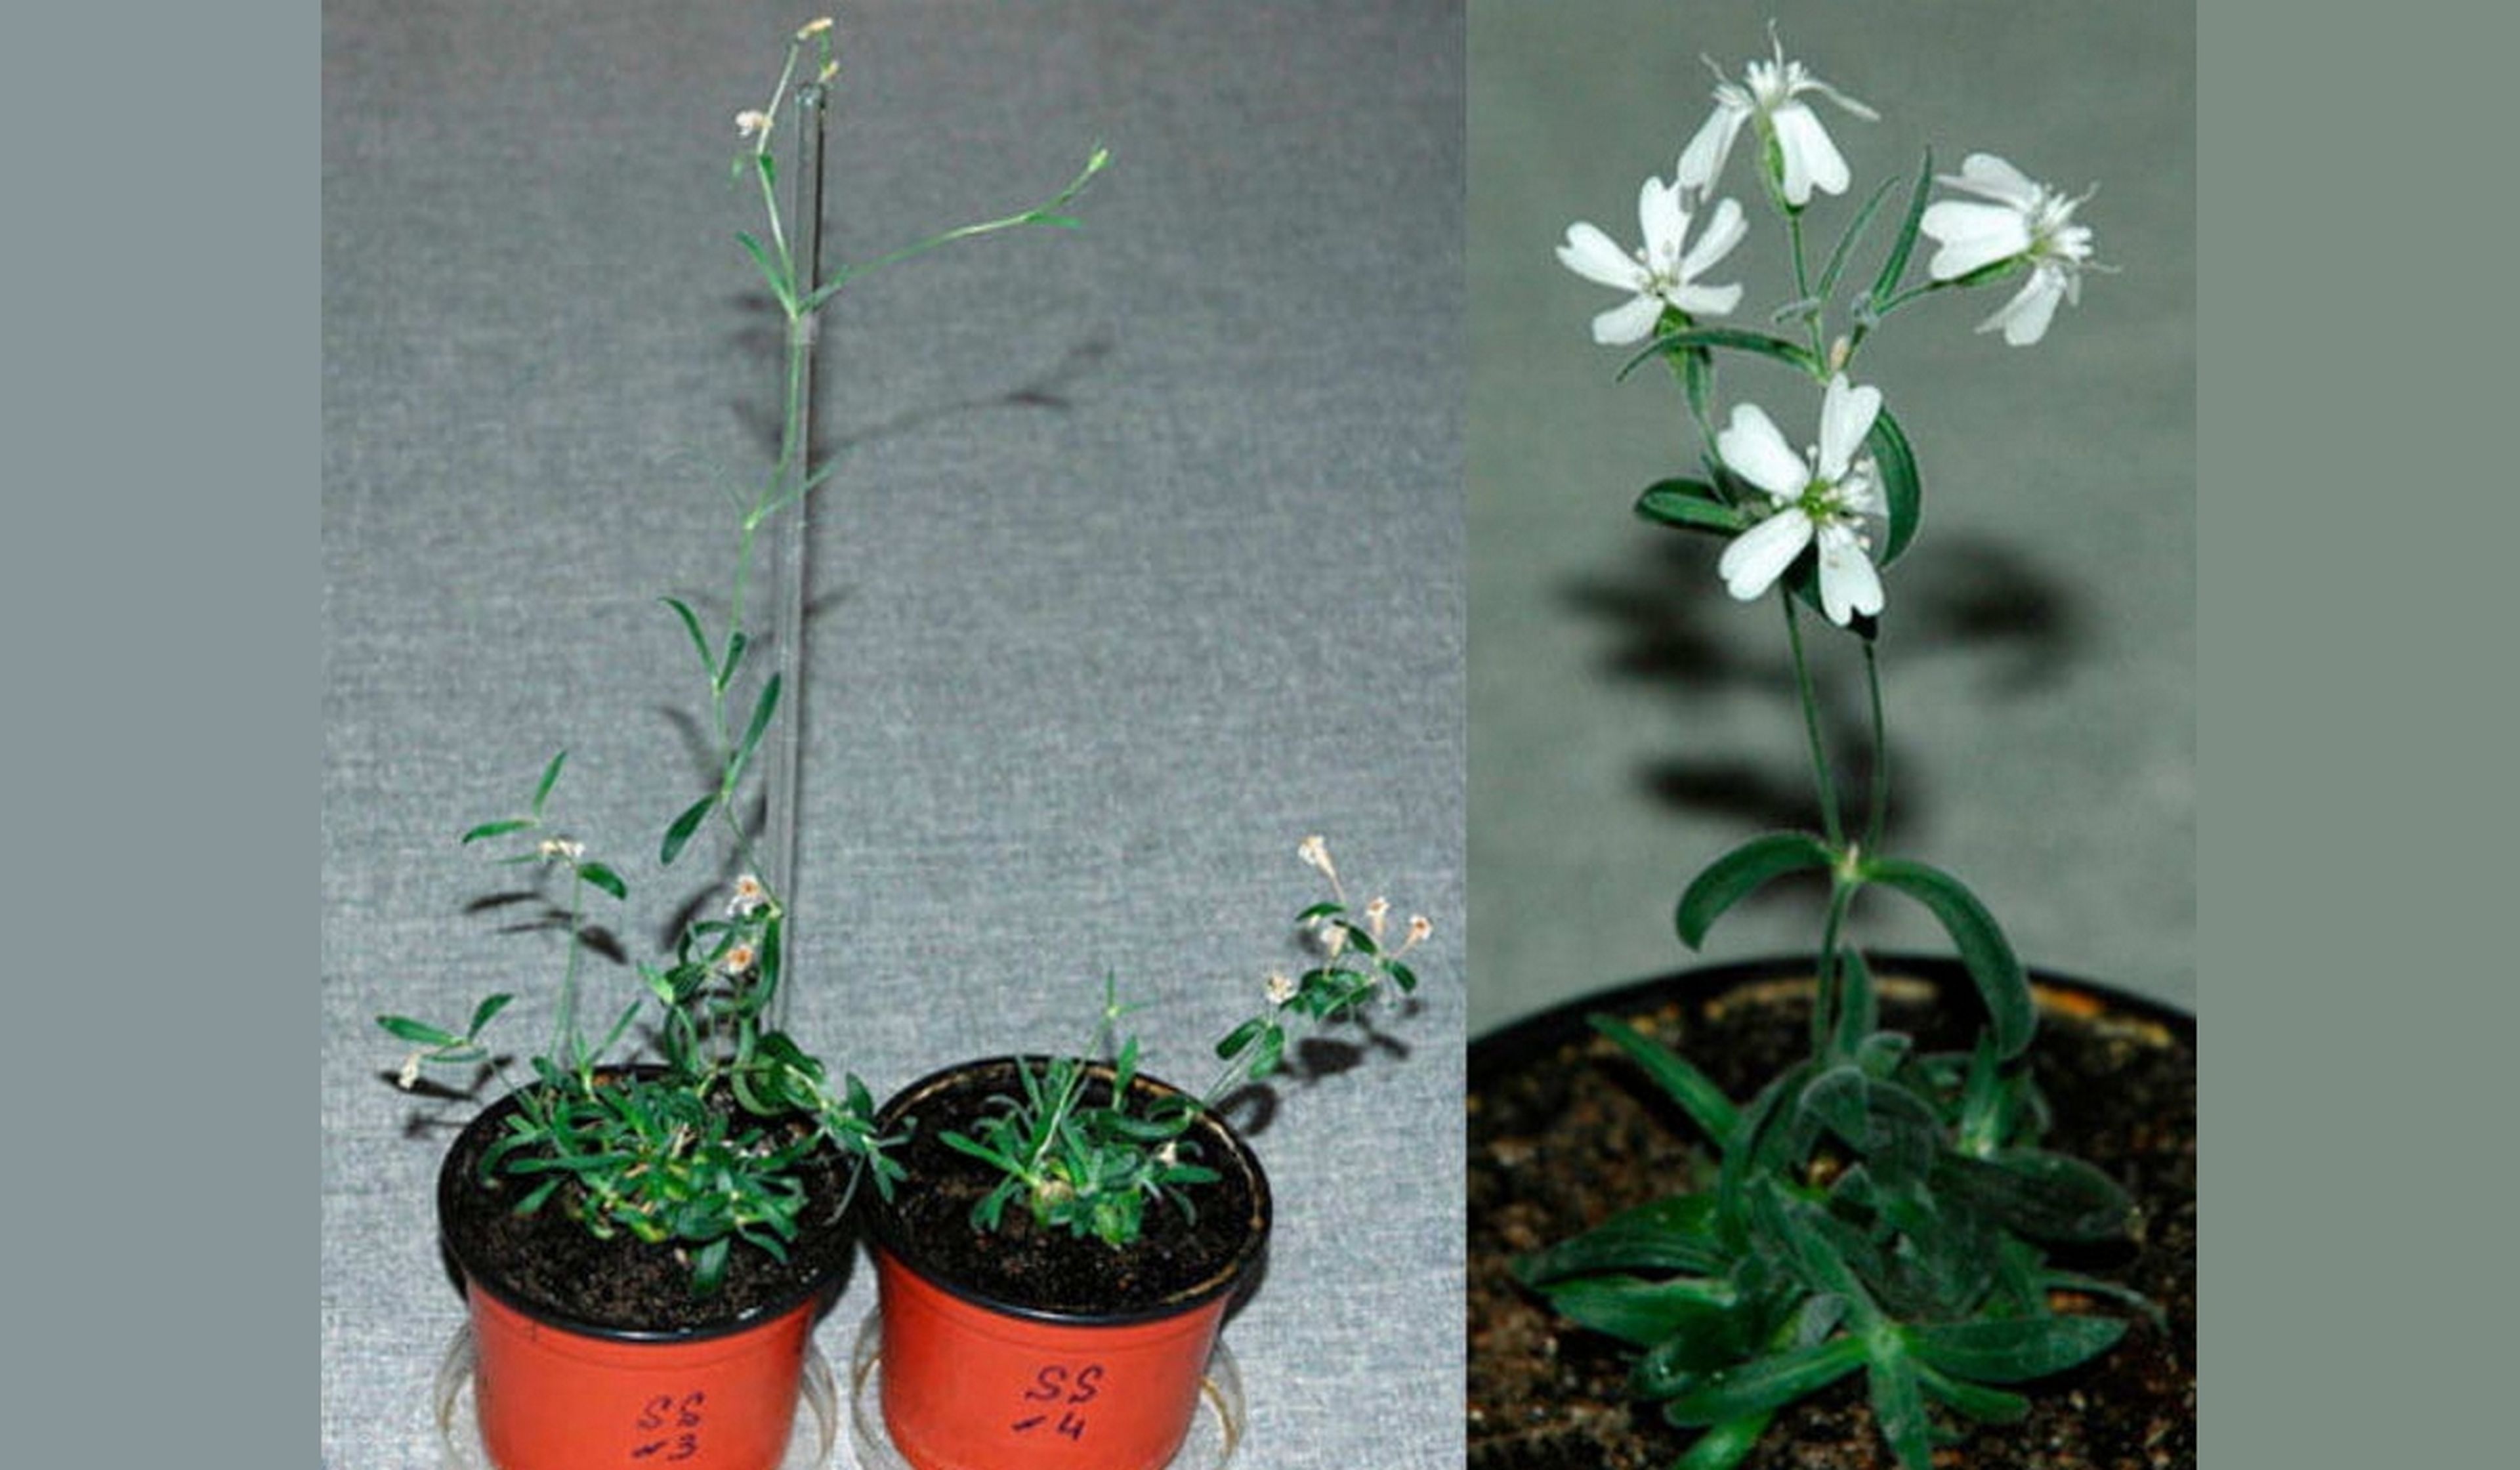 Científicos reviven una planta del Pleistoceno, a partir de unas semillas de hace 32.000 años